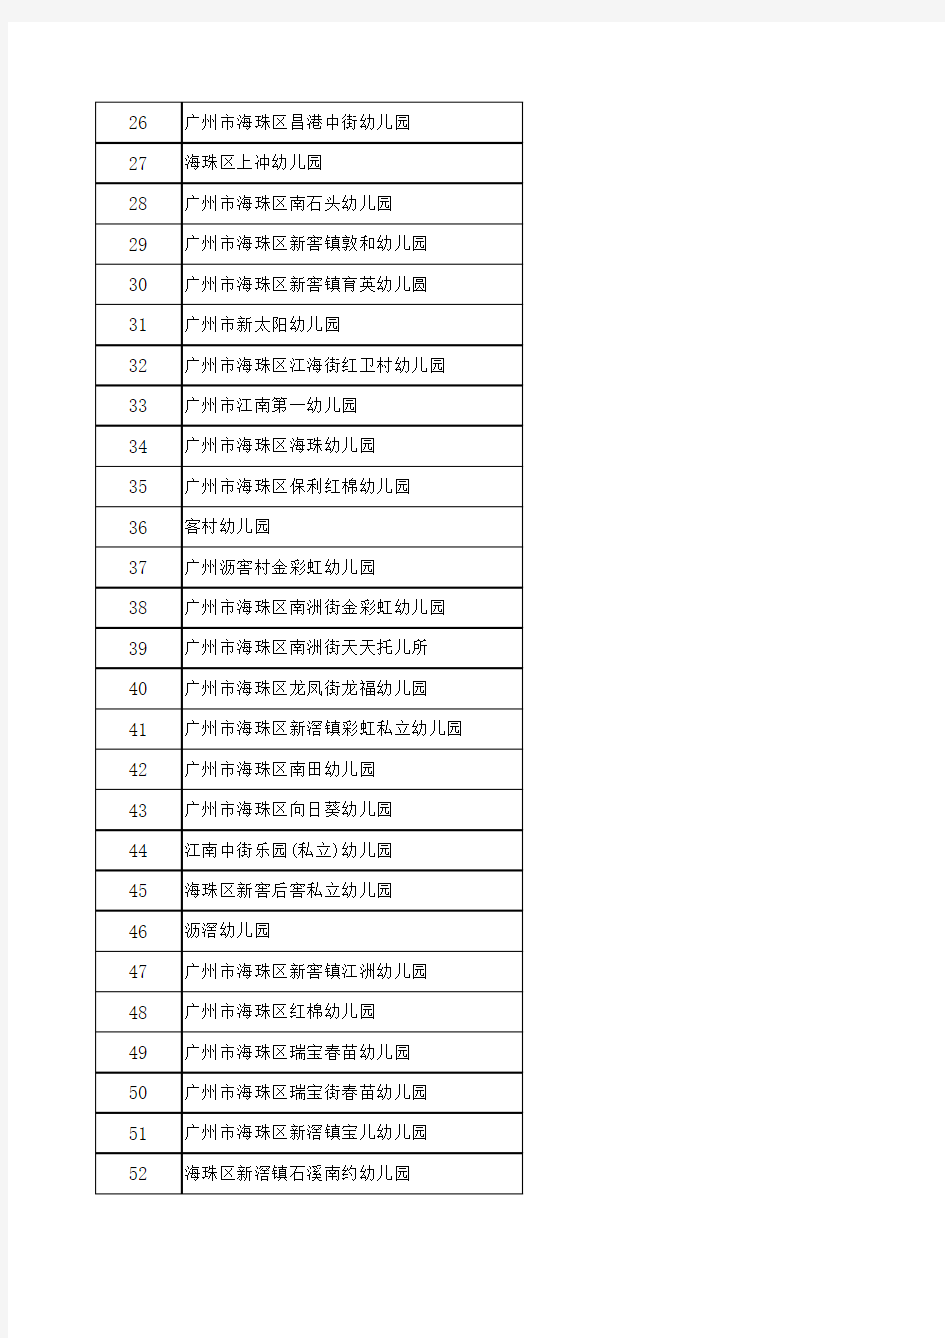 广州幼儿园名单